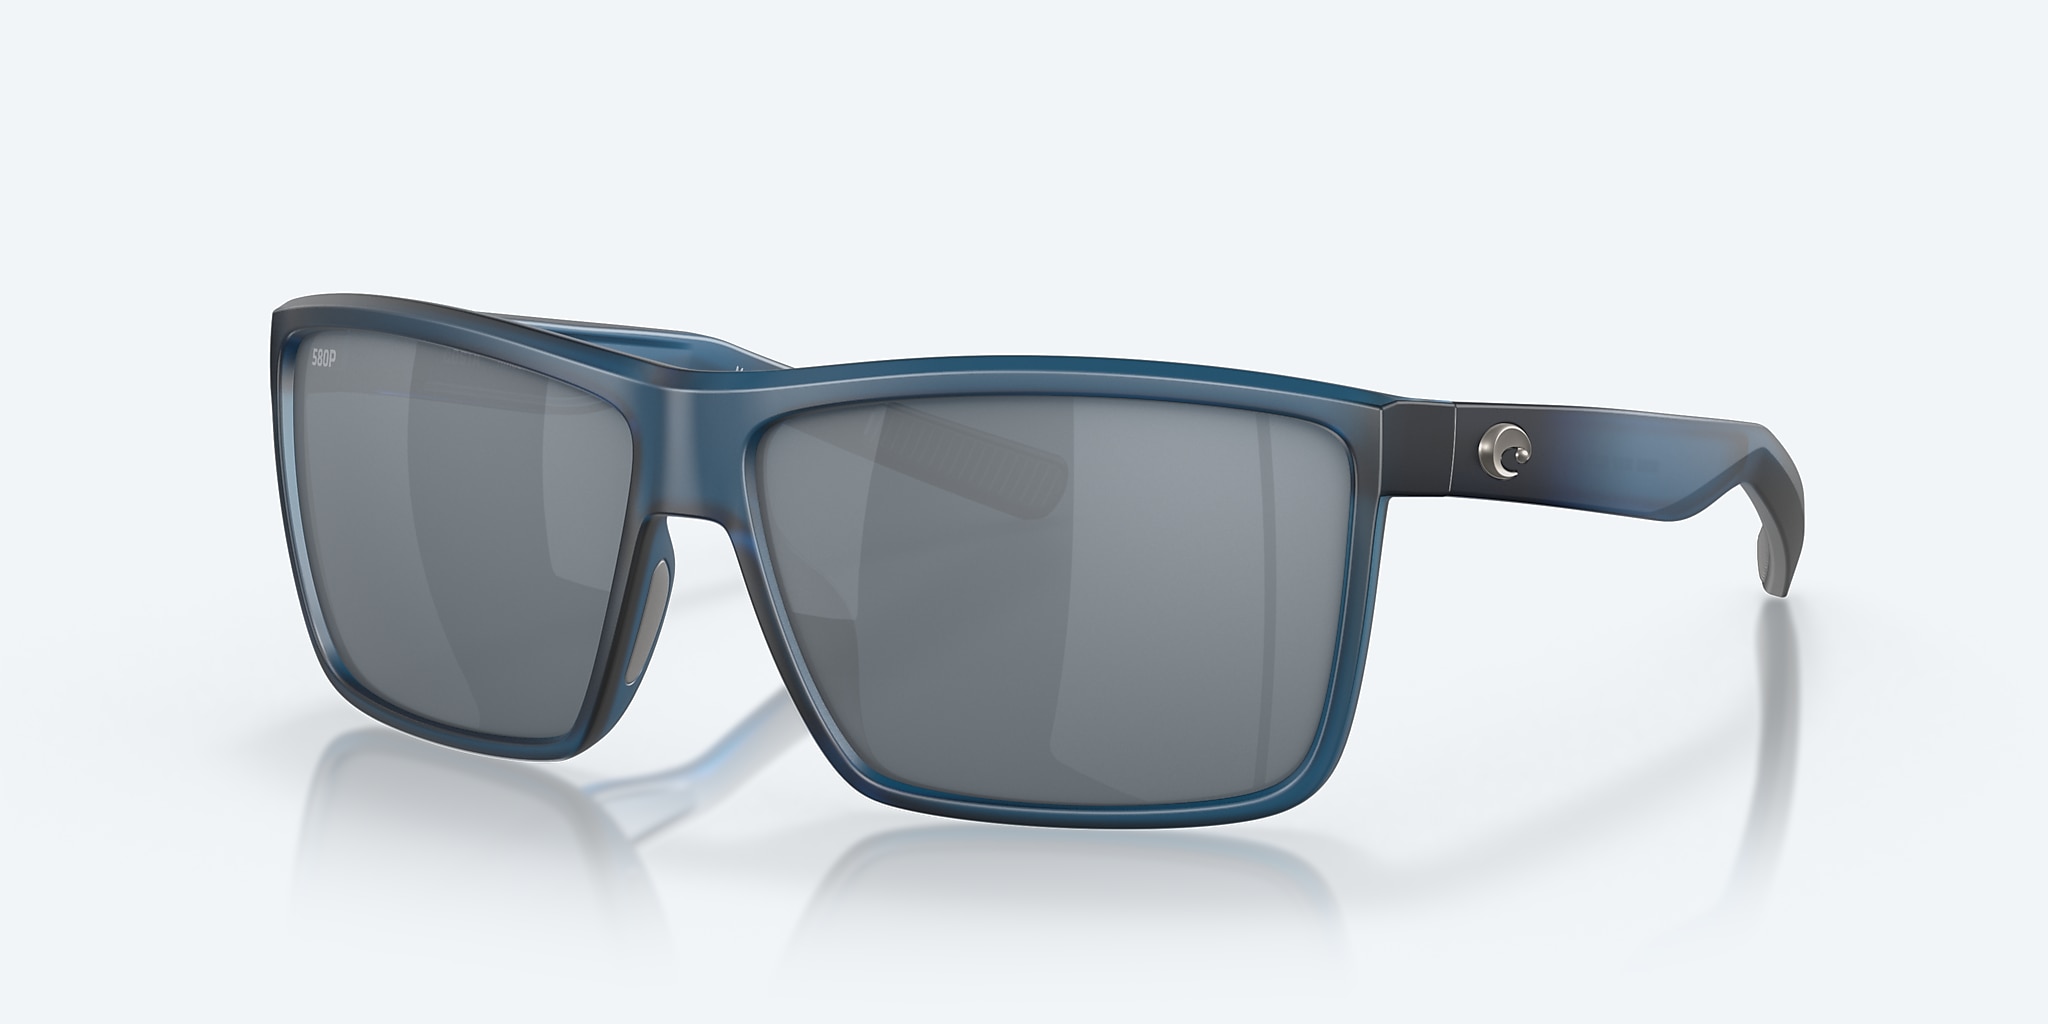 Rinconcito Polarized Sunglasses in Gray Silver Mirror